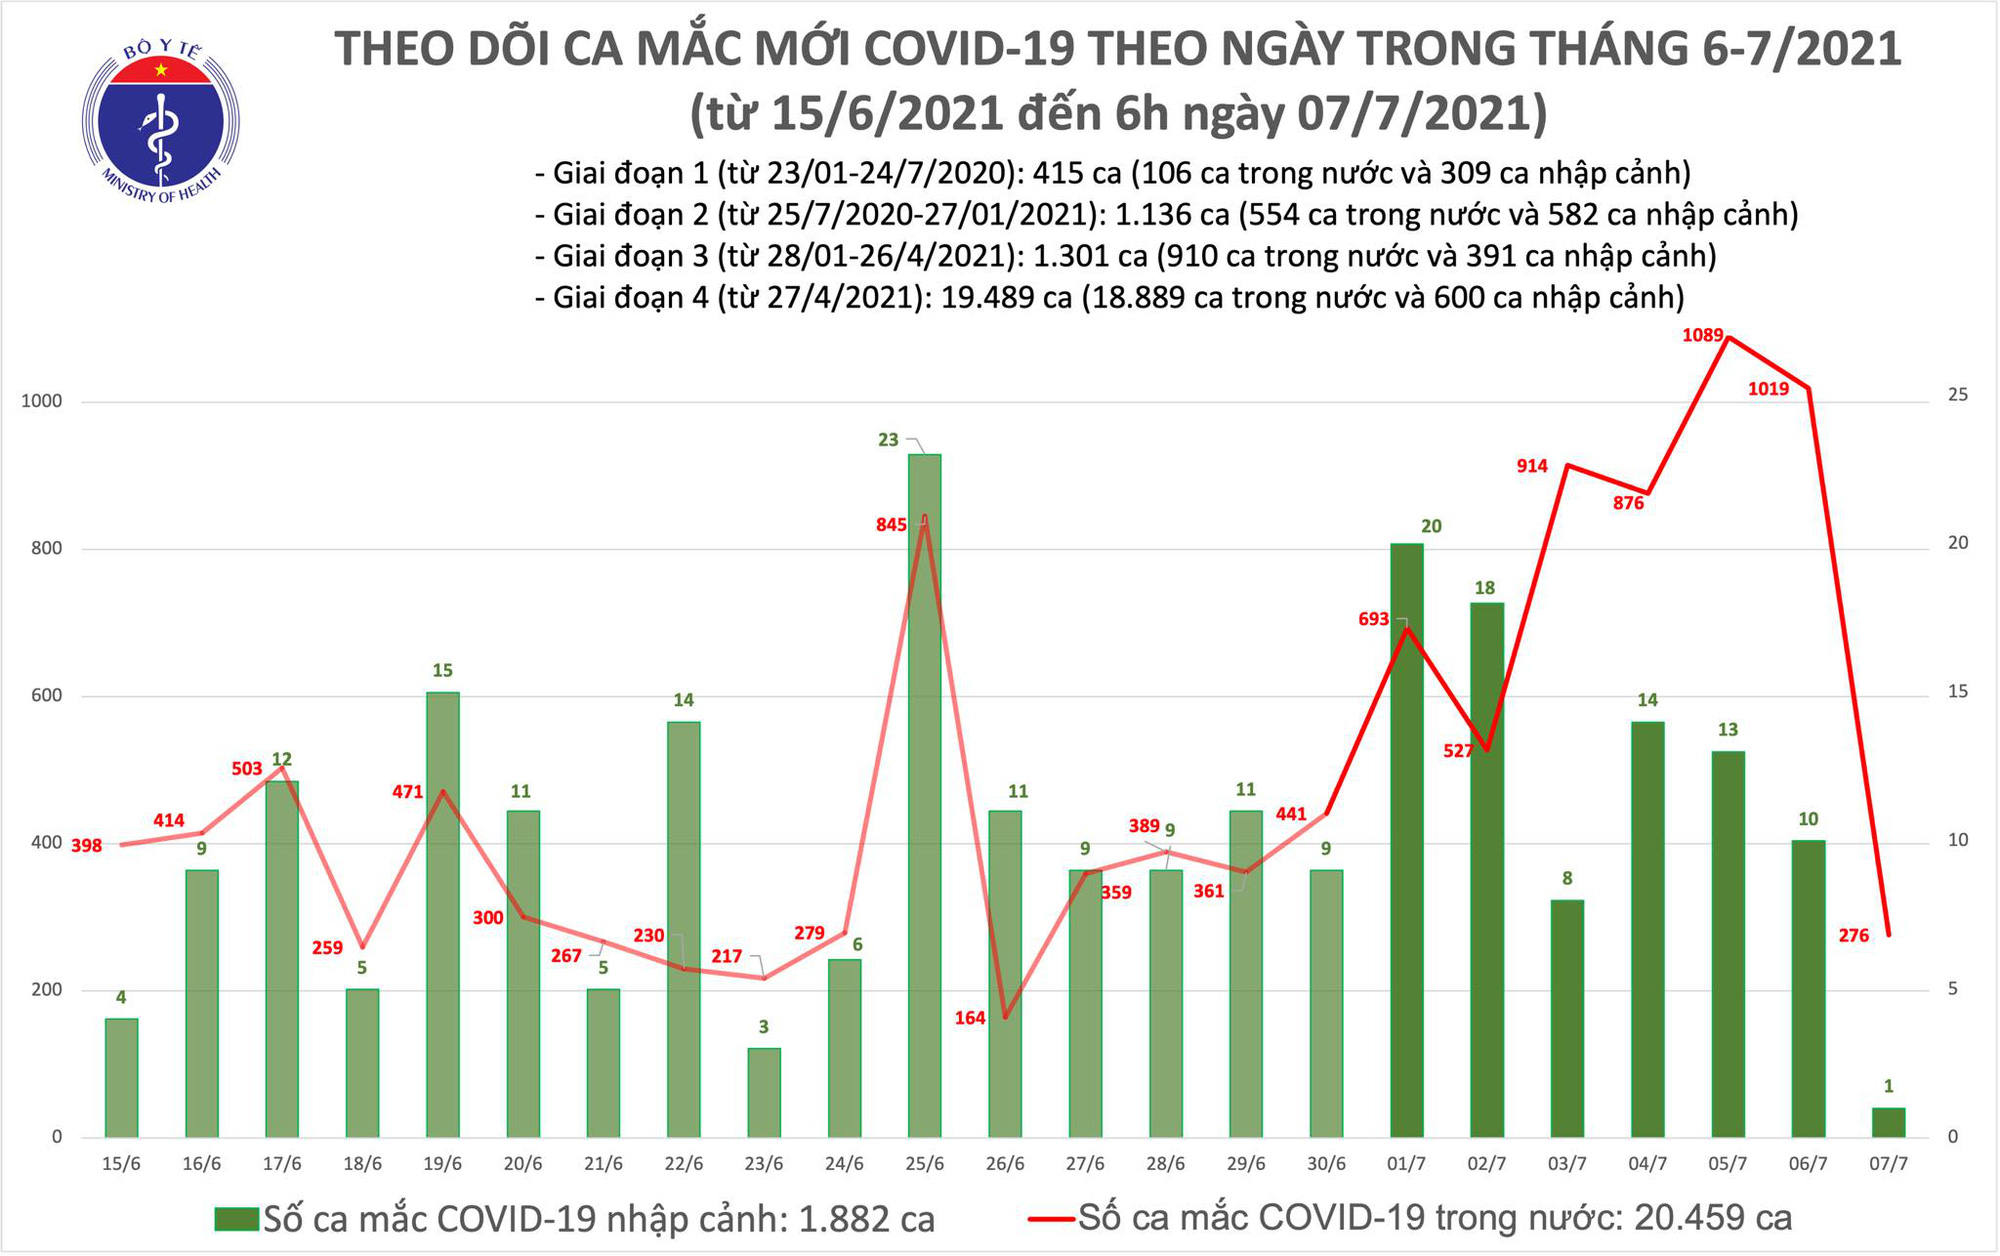 Sáng 7/7, thêm 277 ca mắc COVID-19, riêng TP. Hồ Chí Minh chiếm 270 ca - Ảnh 1.